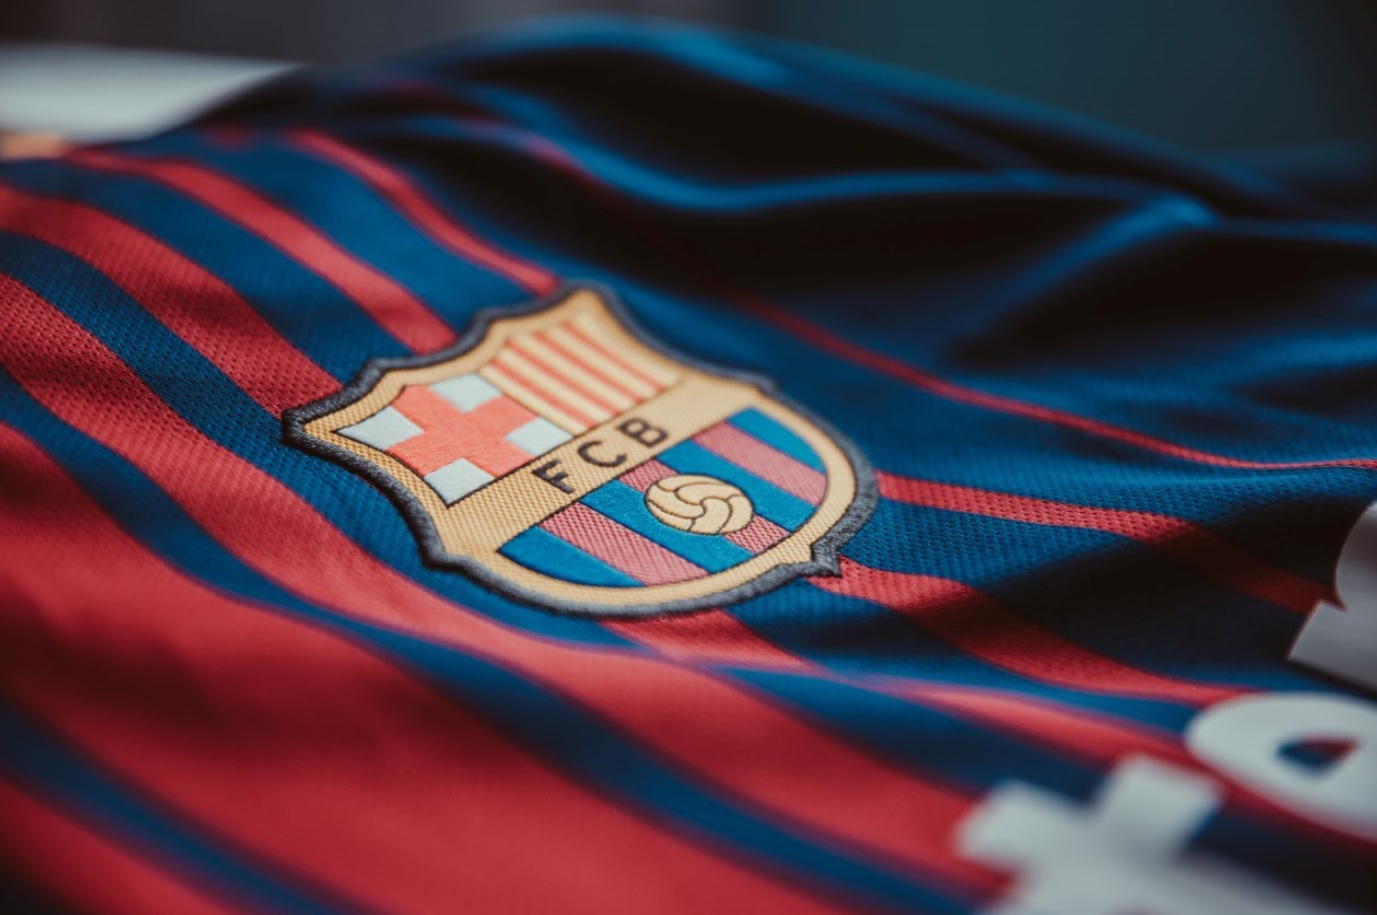 Der Präsident des FC Barcelona enthüllt Pläne zur Entwicklung einer Kryptowährung und eines Metaversums